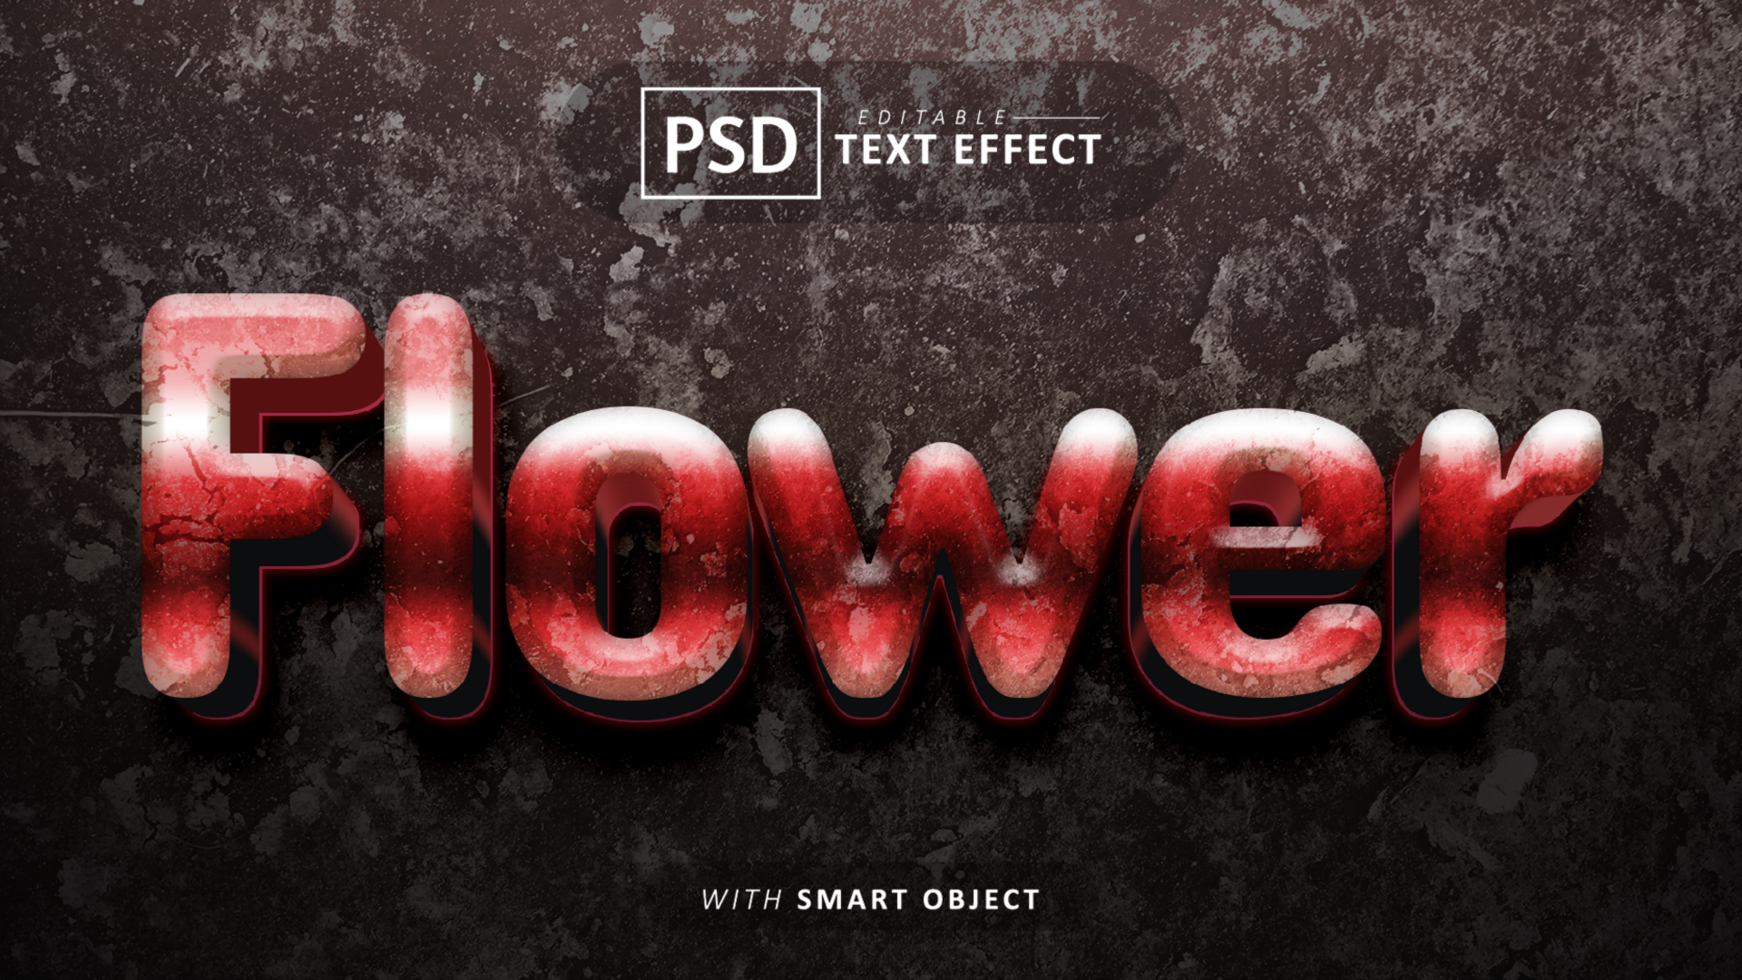 Flower 3d text effect editable psd